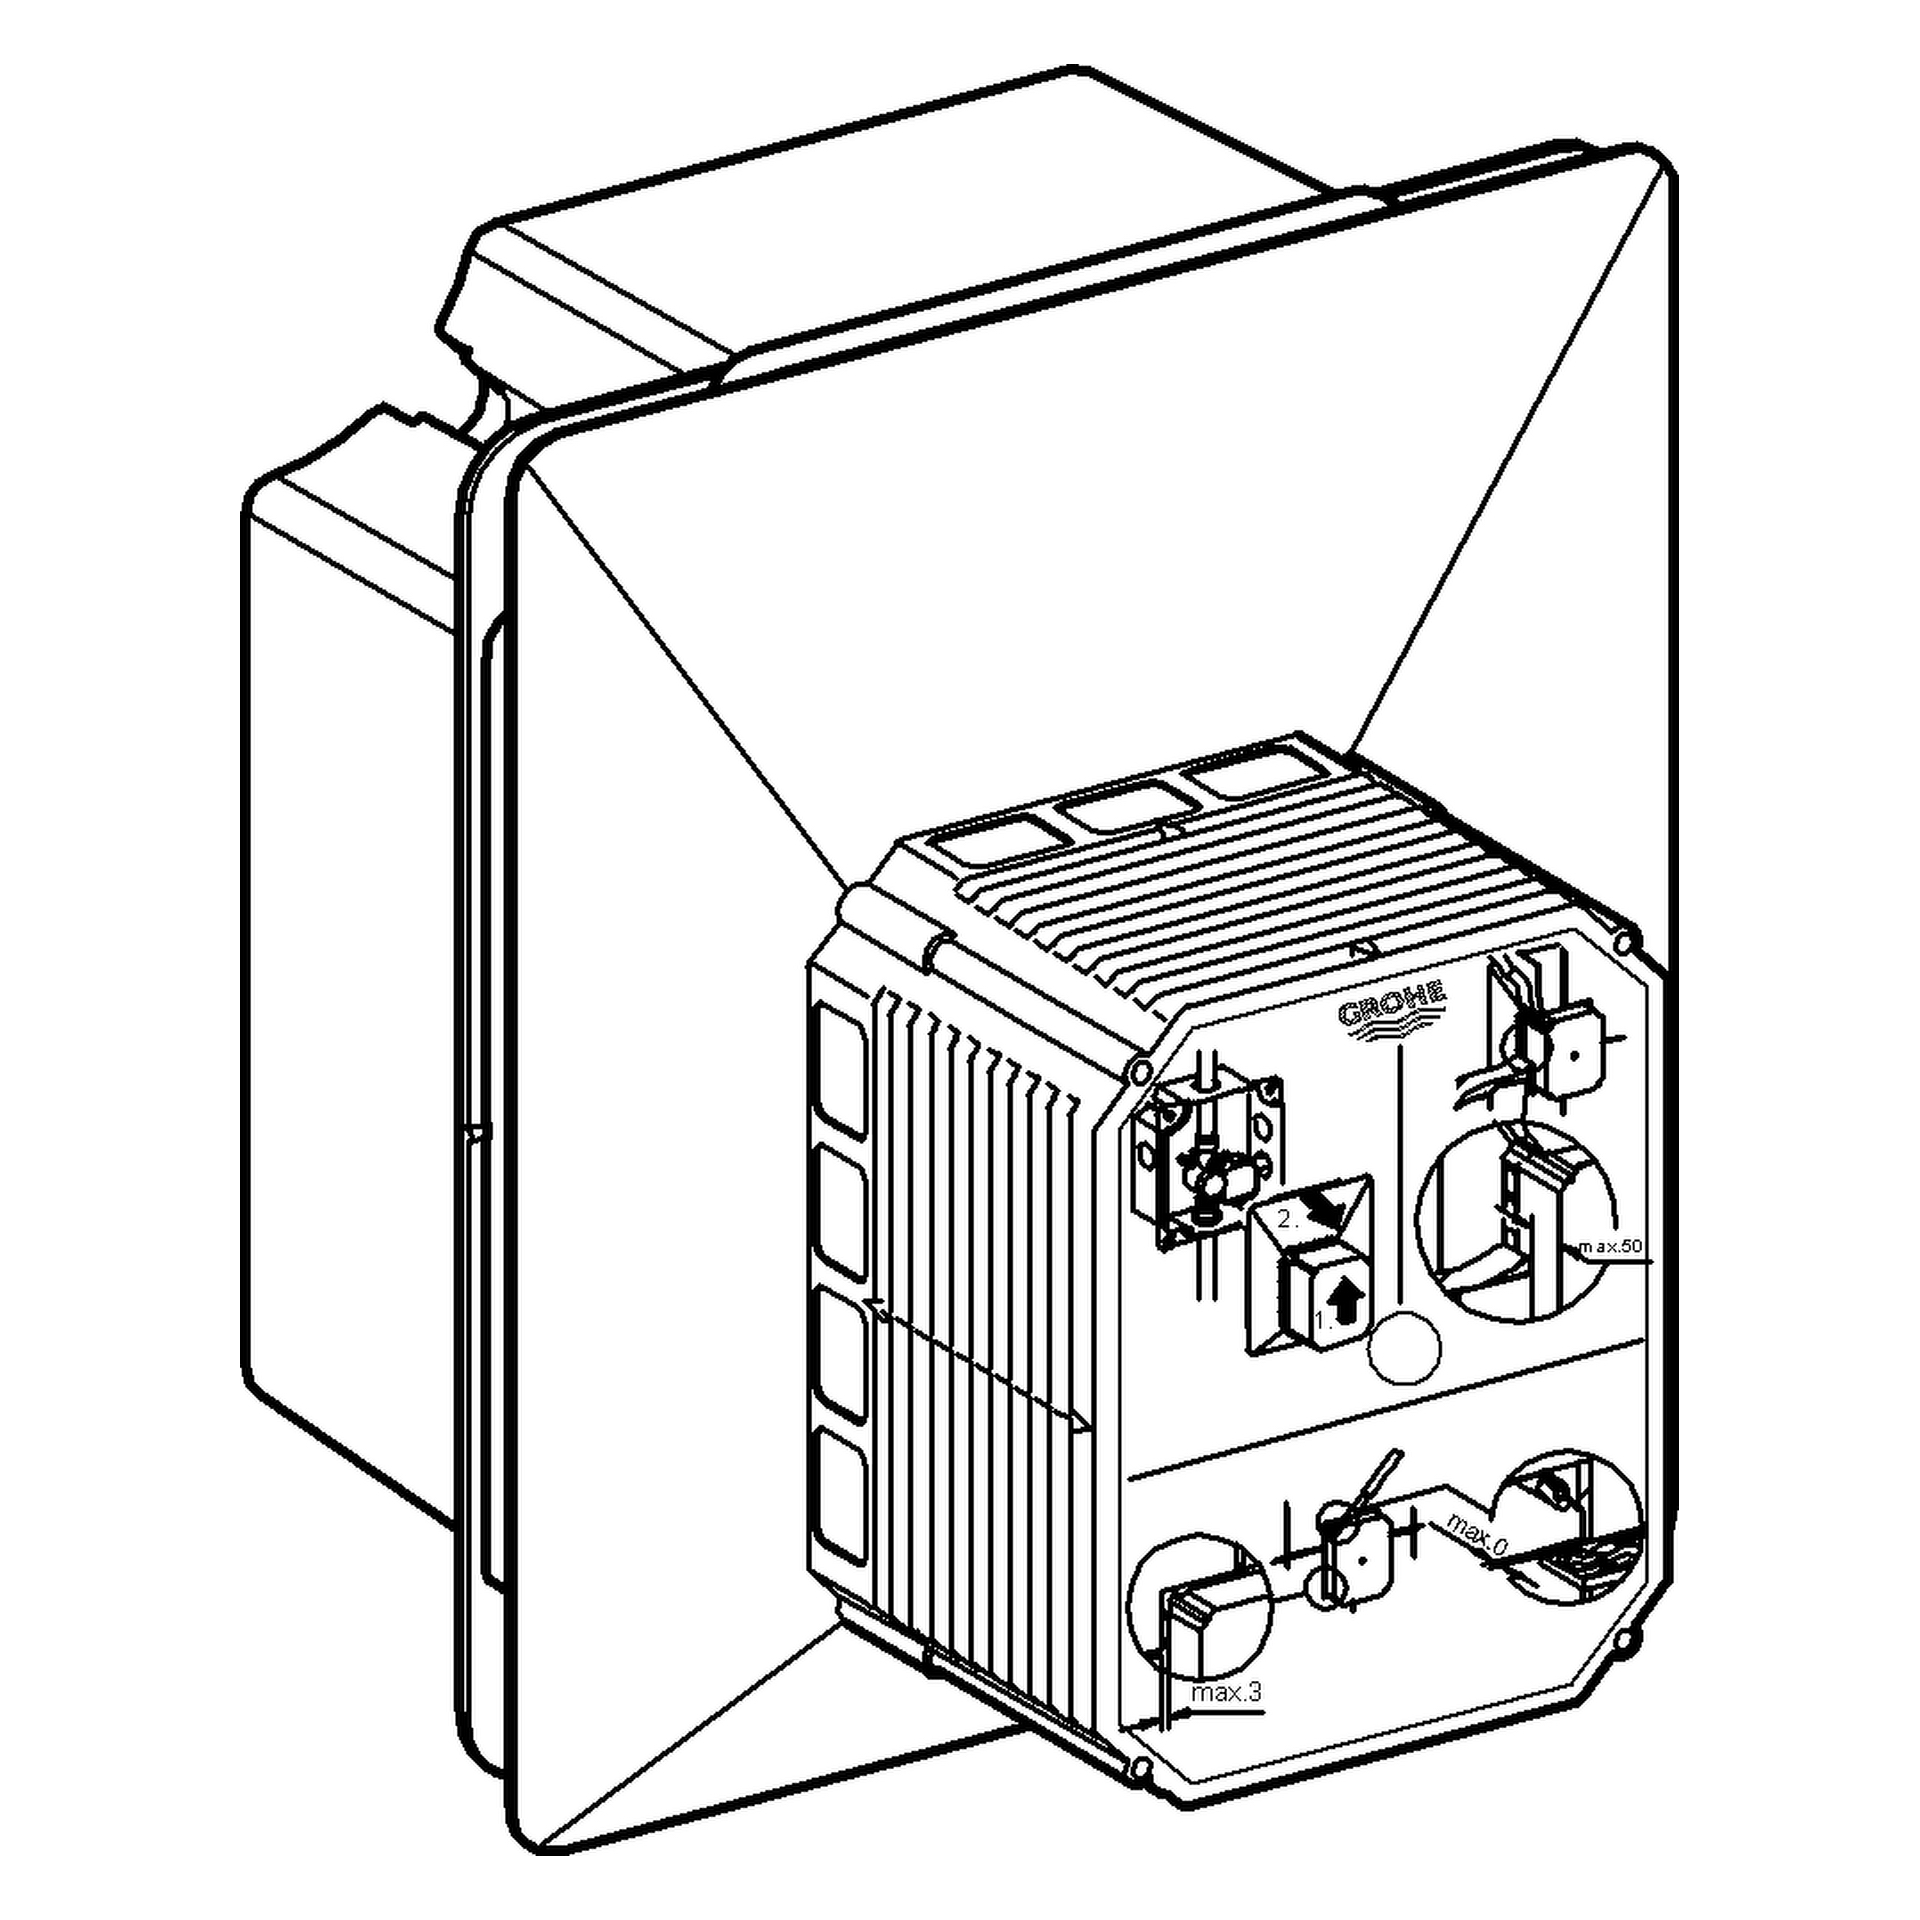 Urinal-Rohbauset Rapido UMB 38787, für manuelle Betätigung oder Tectron Infrarot Elektronik 6 V, für Nass- und Trockenausbau, für Fertigmontagesets mit Abmessungen 116 × 144 mm